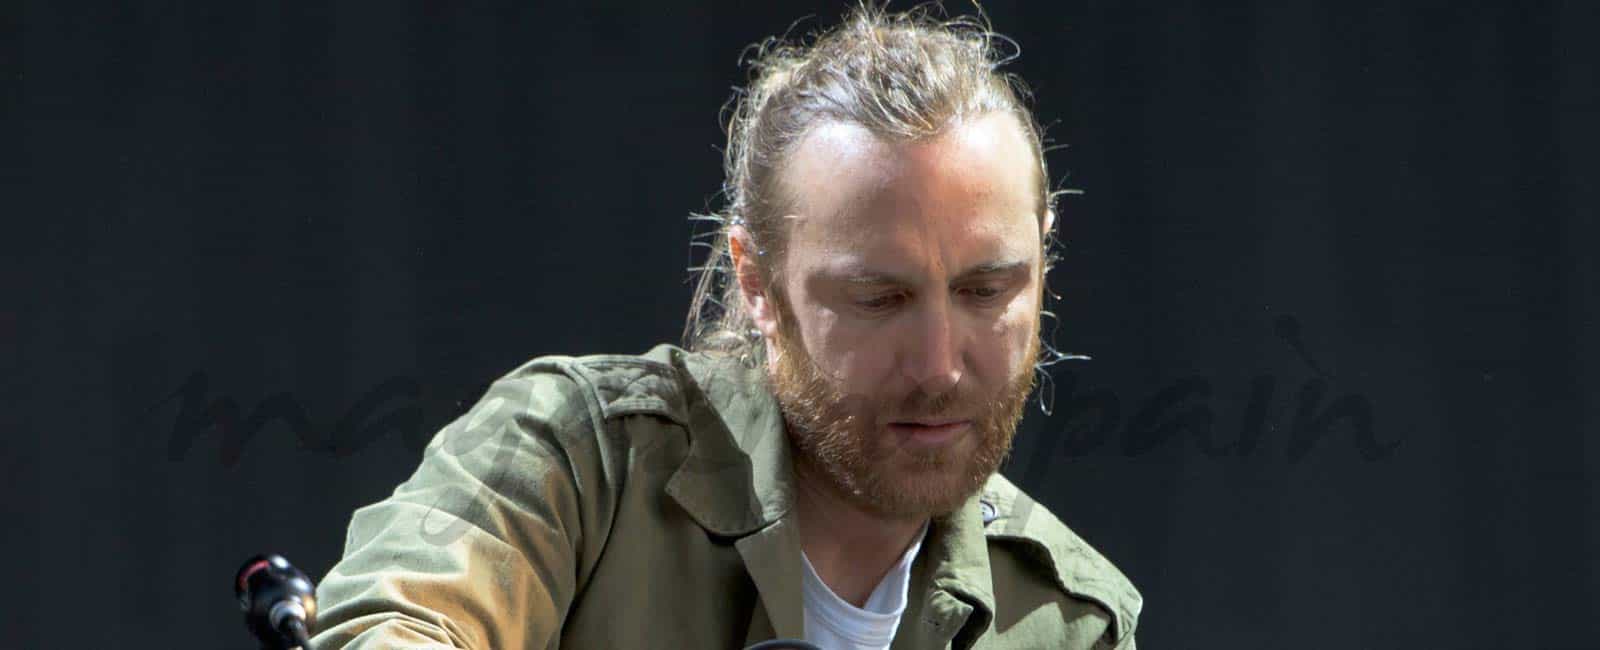 David Guetta vuelve a revolucionar Ibiza